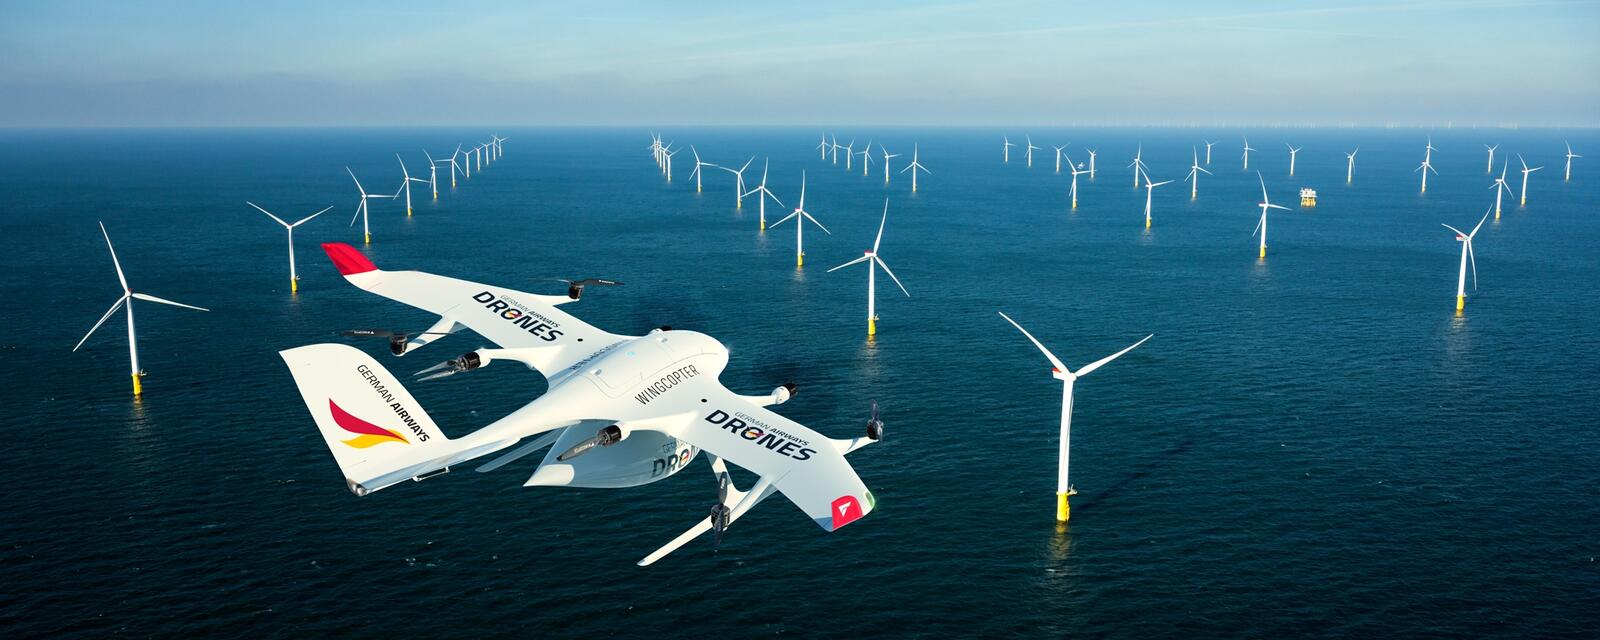 German Airways und Wingcopter vereinbaren Kooperation und treiben mit Offshore-Lieferungen den Einsatz von Drohnen voran